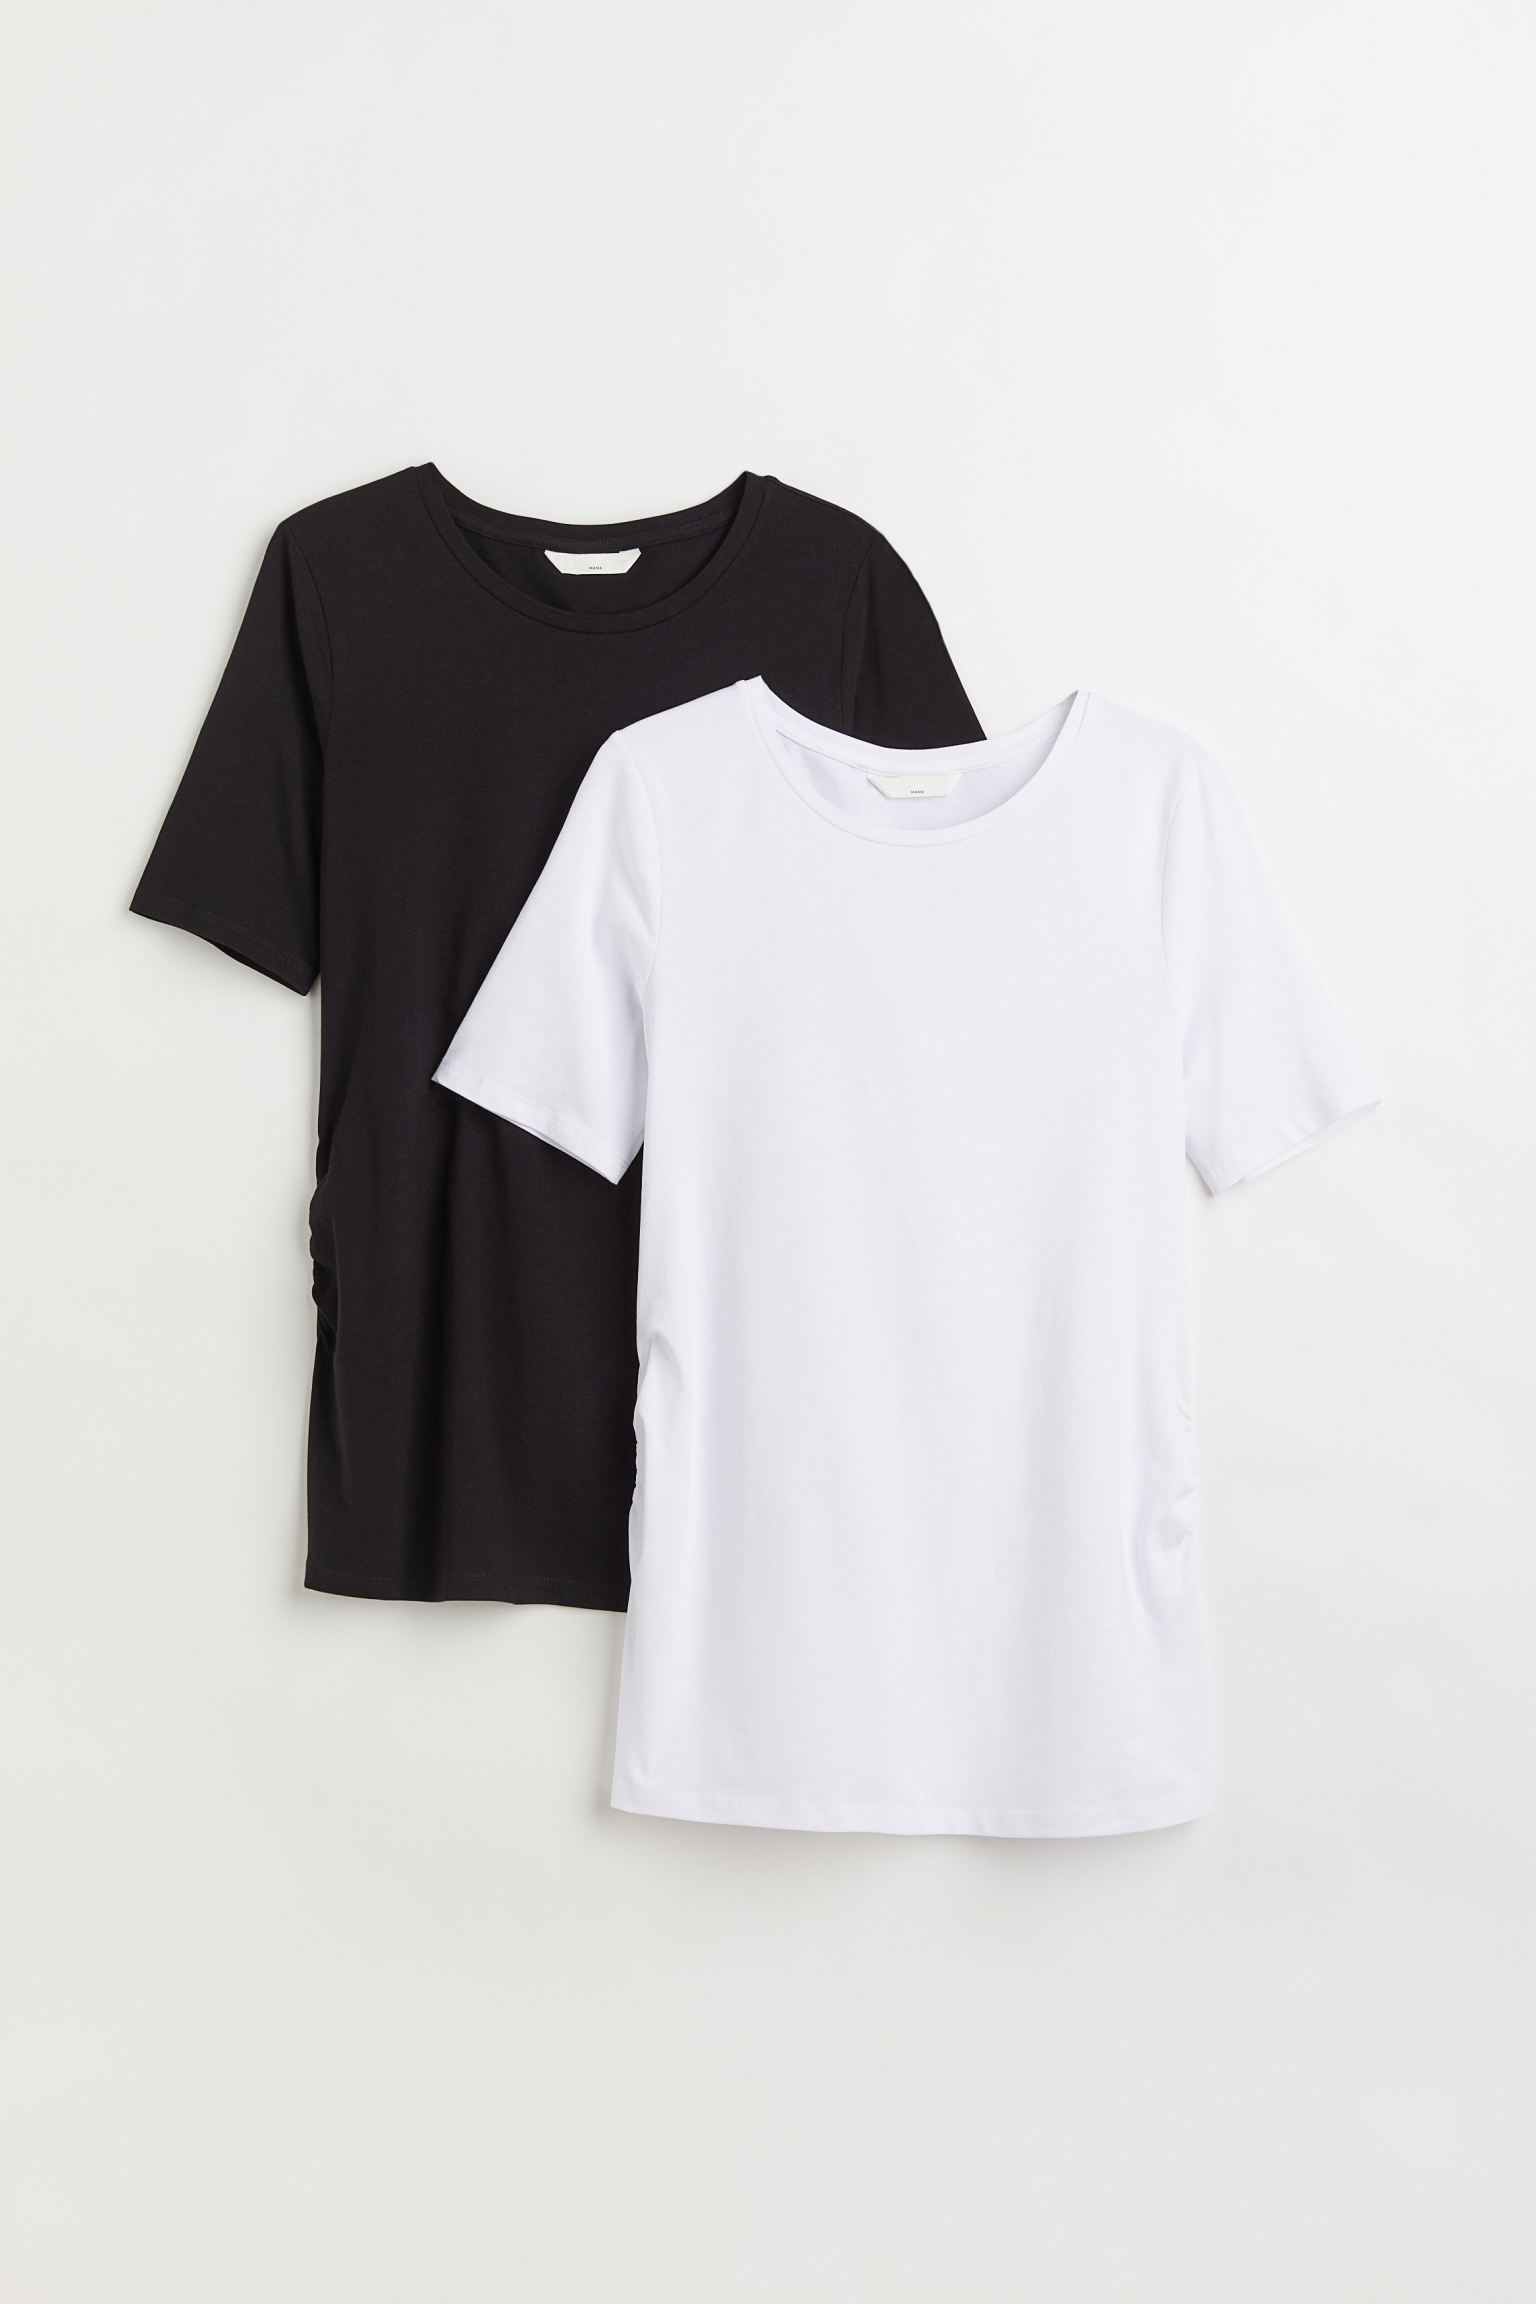 Комплект футболок женских H&M 1090126003 черных M (доставка из-за рубежа)